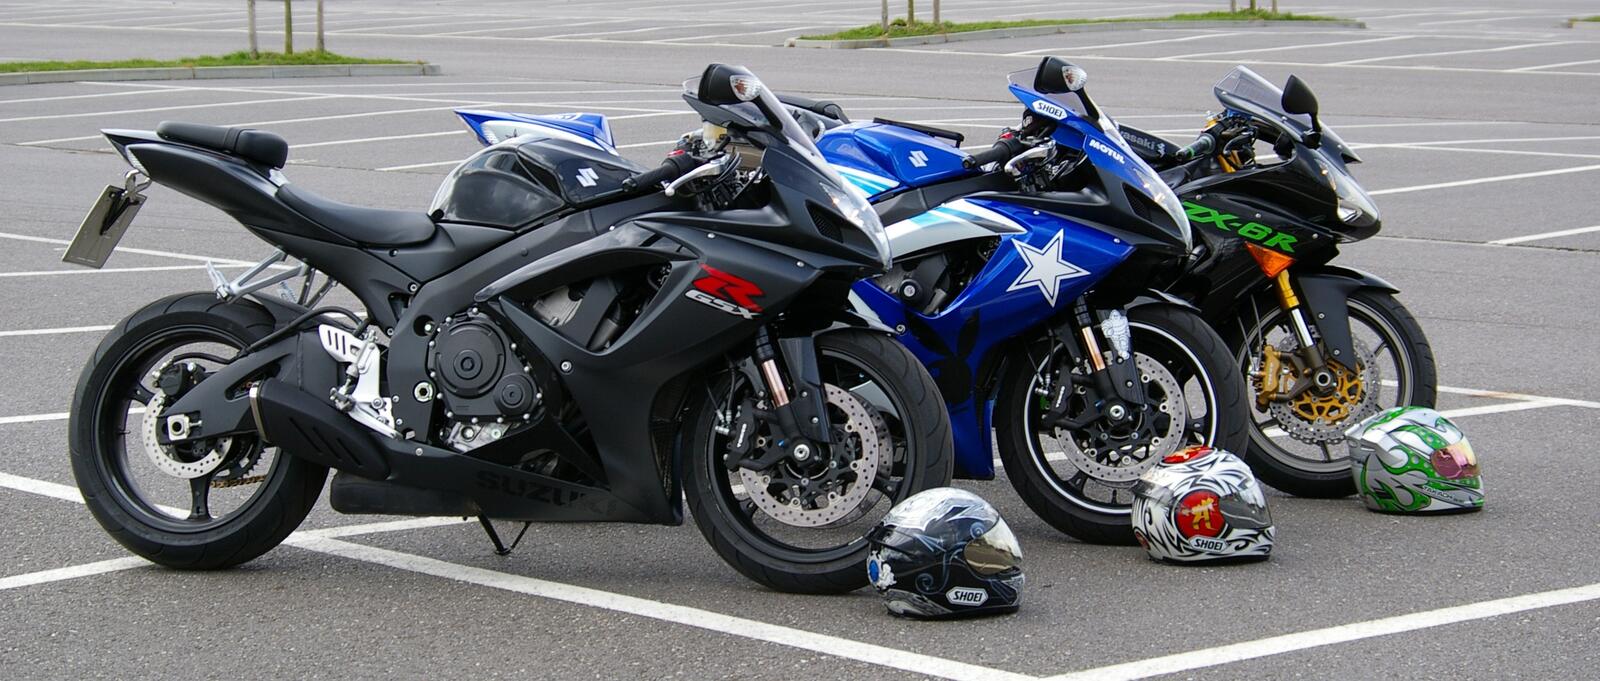 Три мотоцикла Кавасаки на парковке